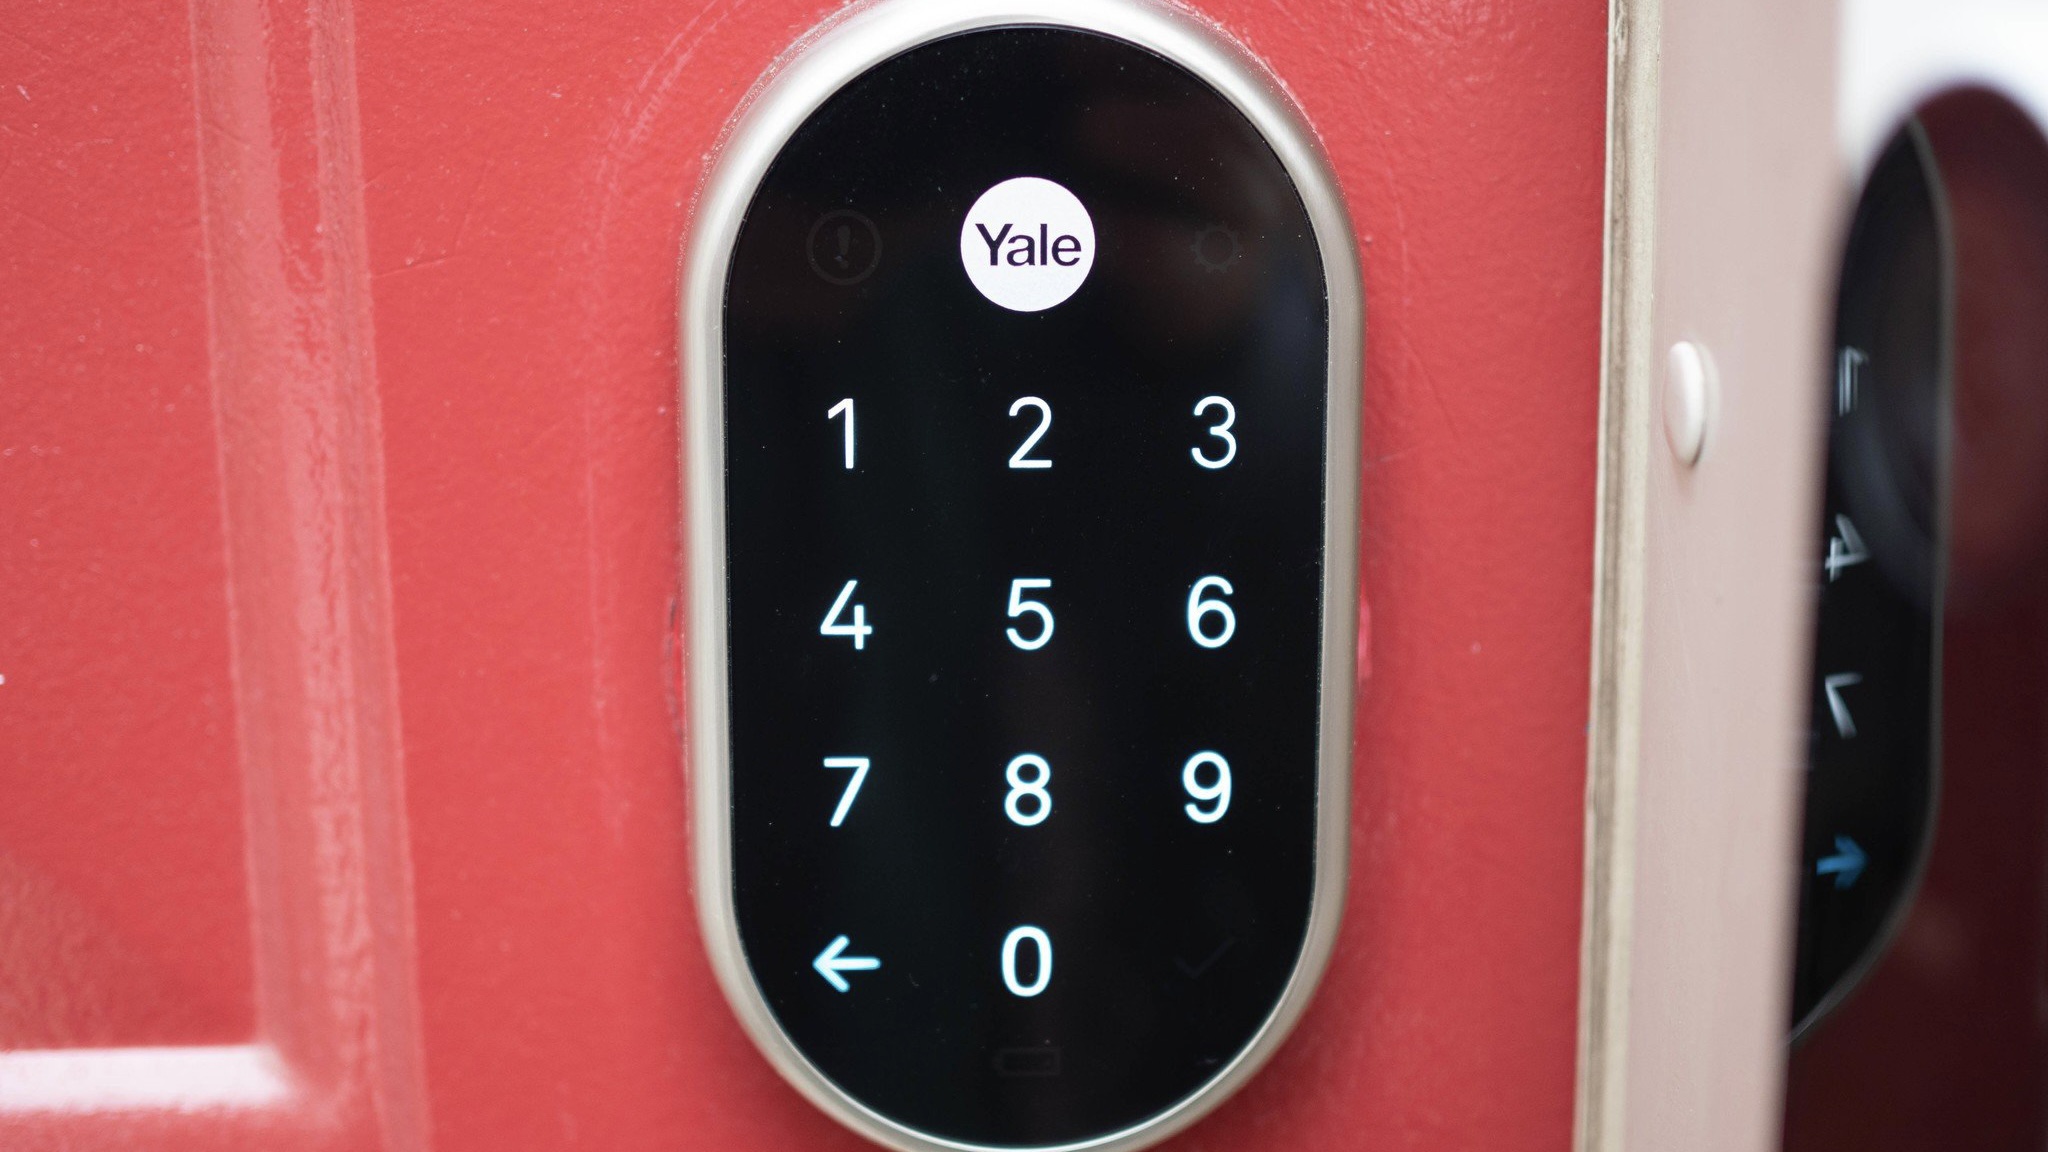 Yale smart lock